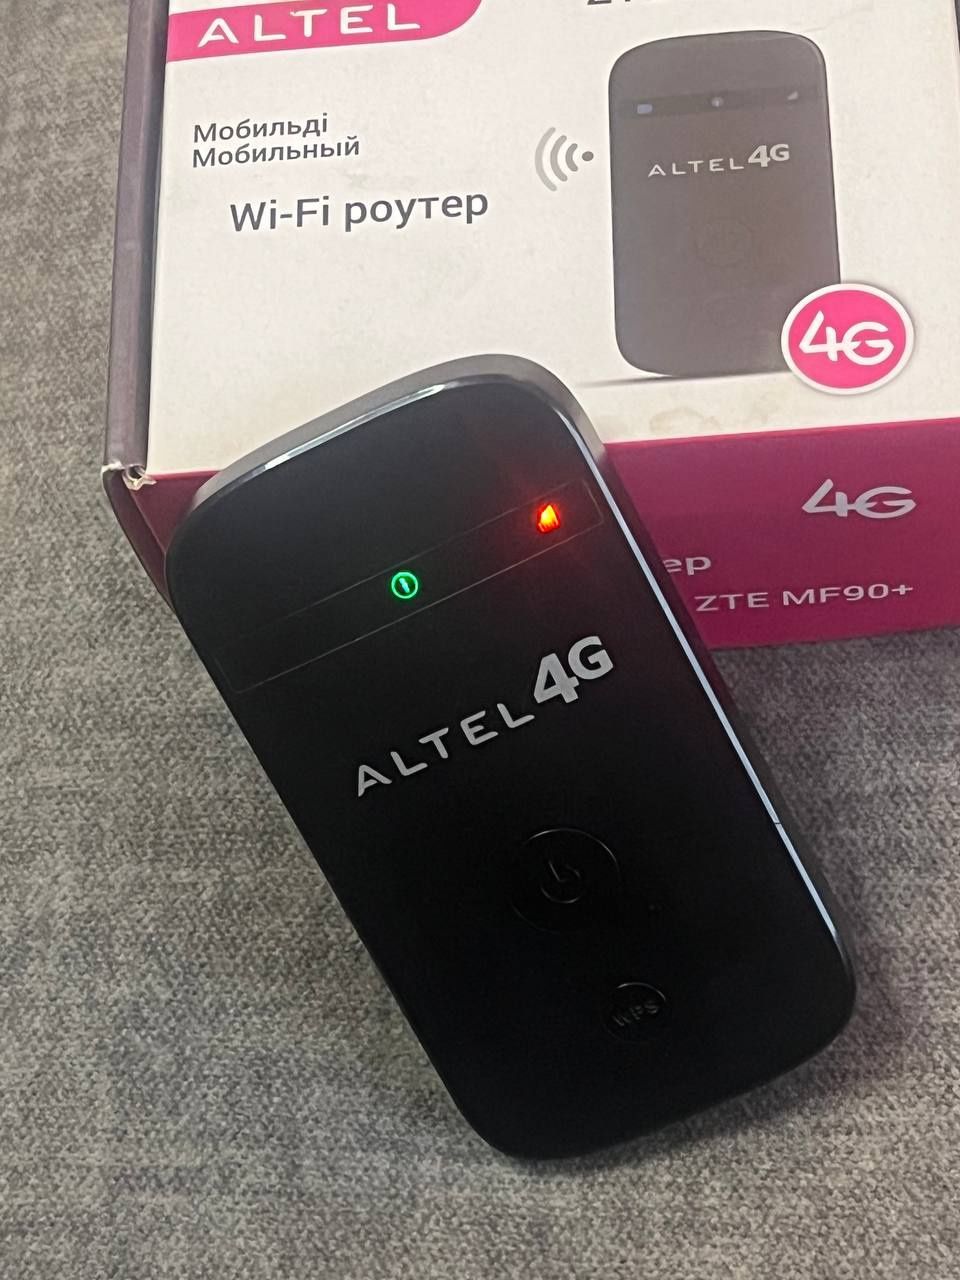 Alitel 4G wi-fi роутер